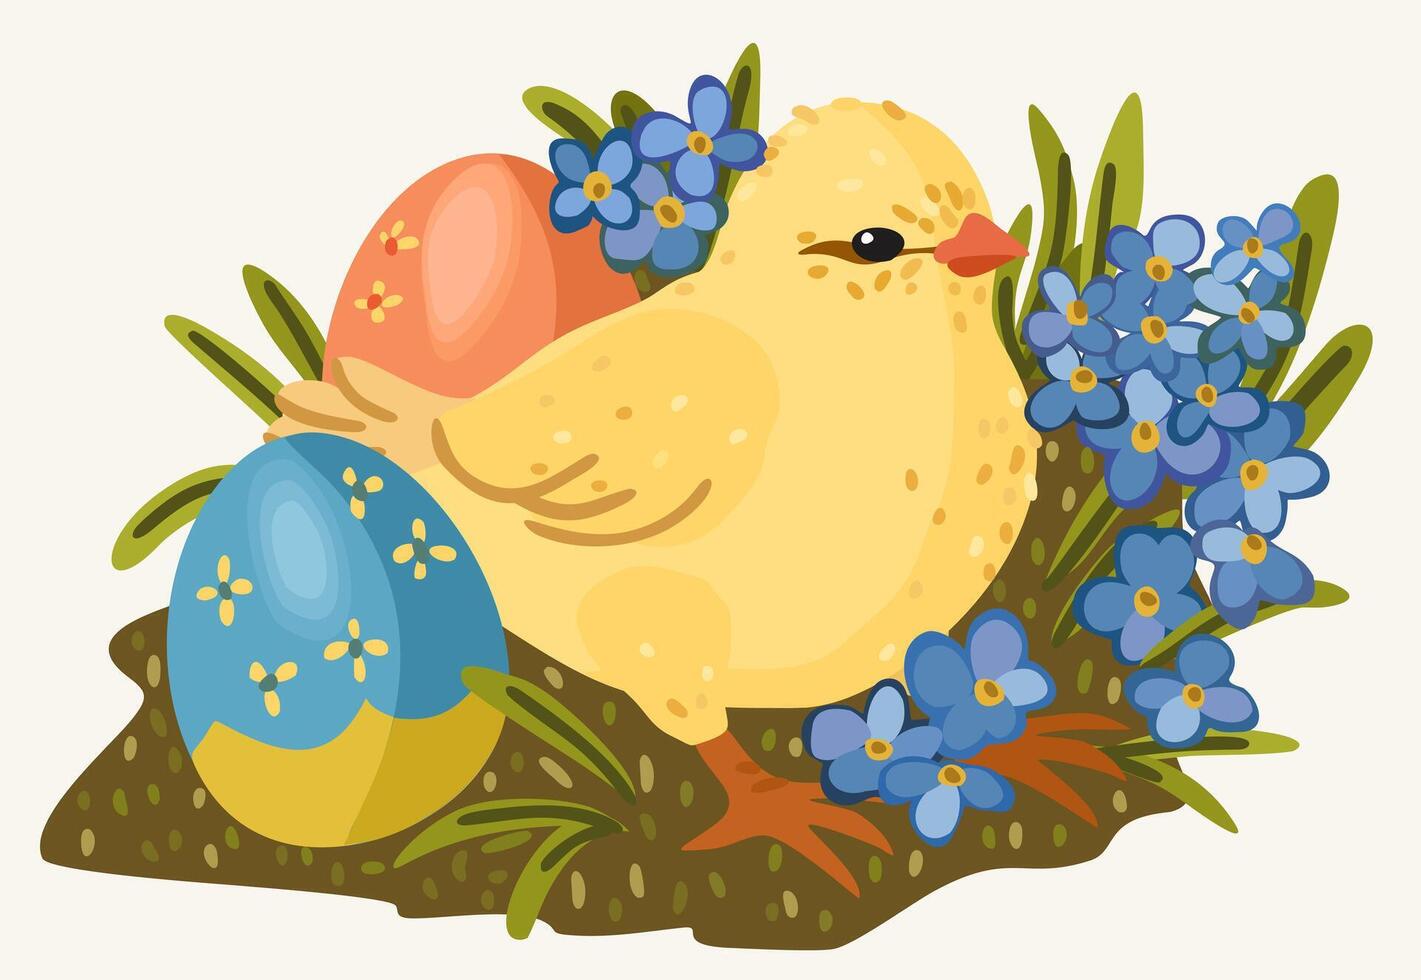 påsk brud med färgad dekorativ påsk ägg och vår blommor. vektor isolerat illustration